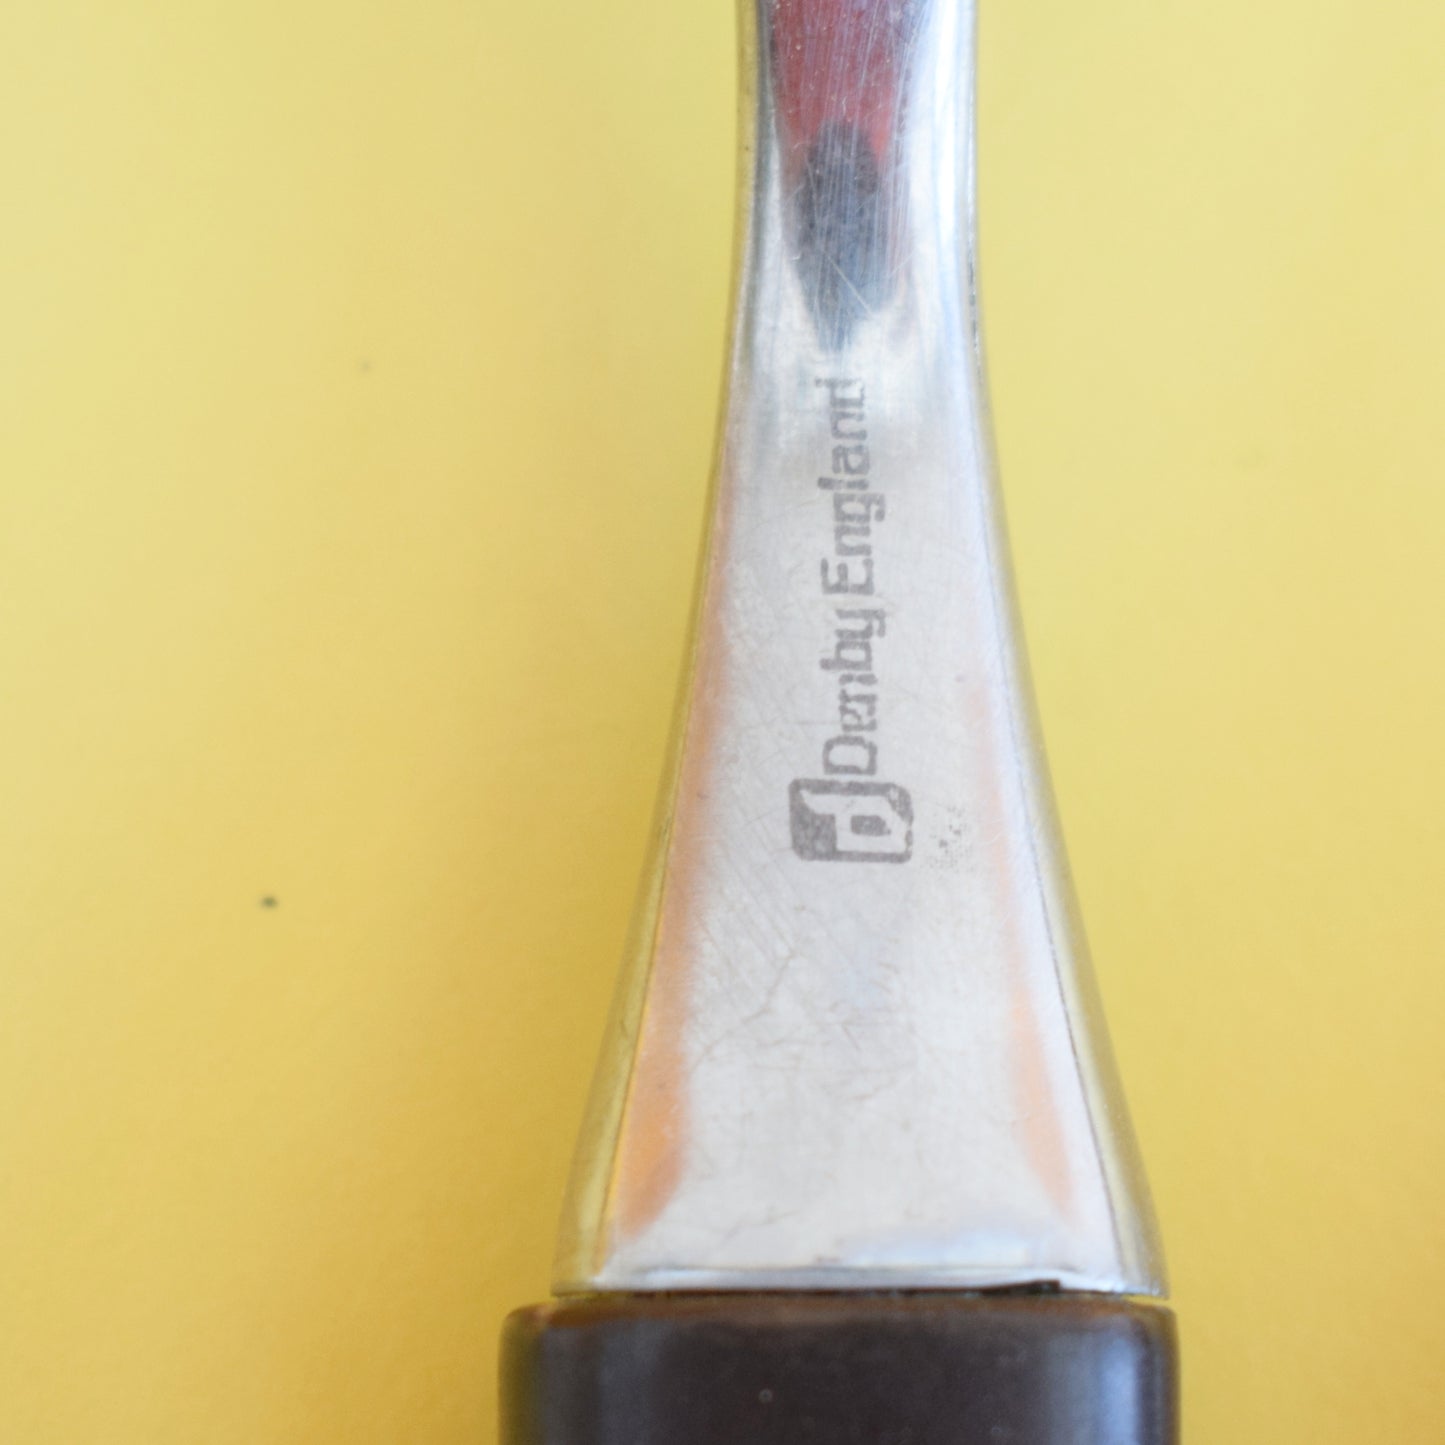 Vintage 1960s Denby Arabesque Forks -Touchstone